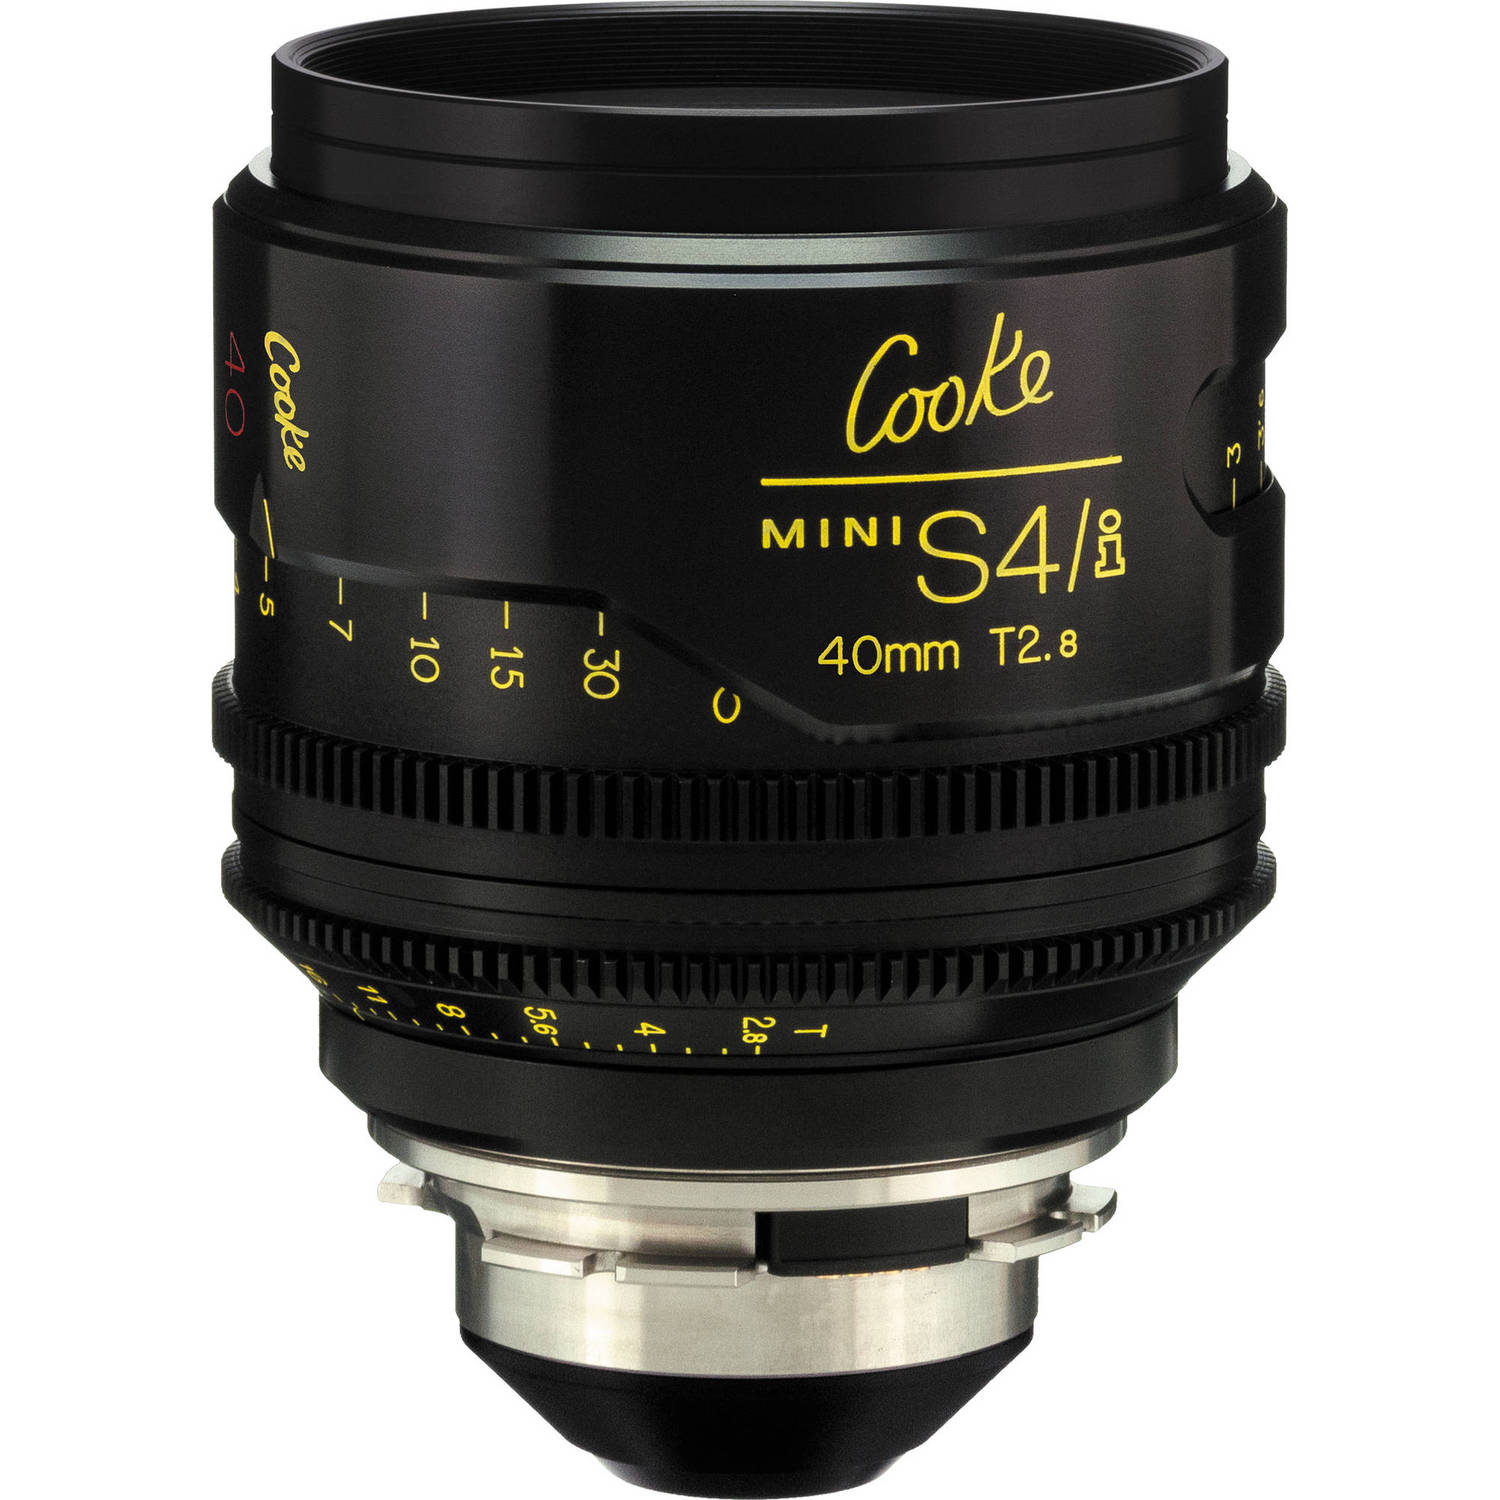 Cooke 40mm T2.8 miniS4/i Cine Lens (Feet)